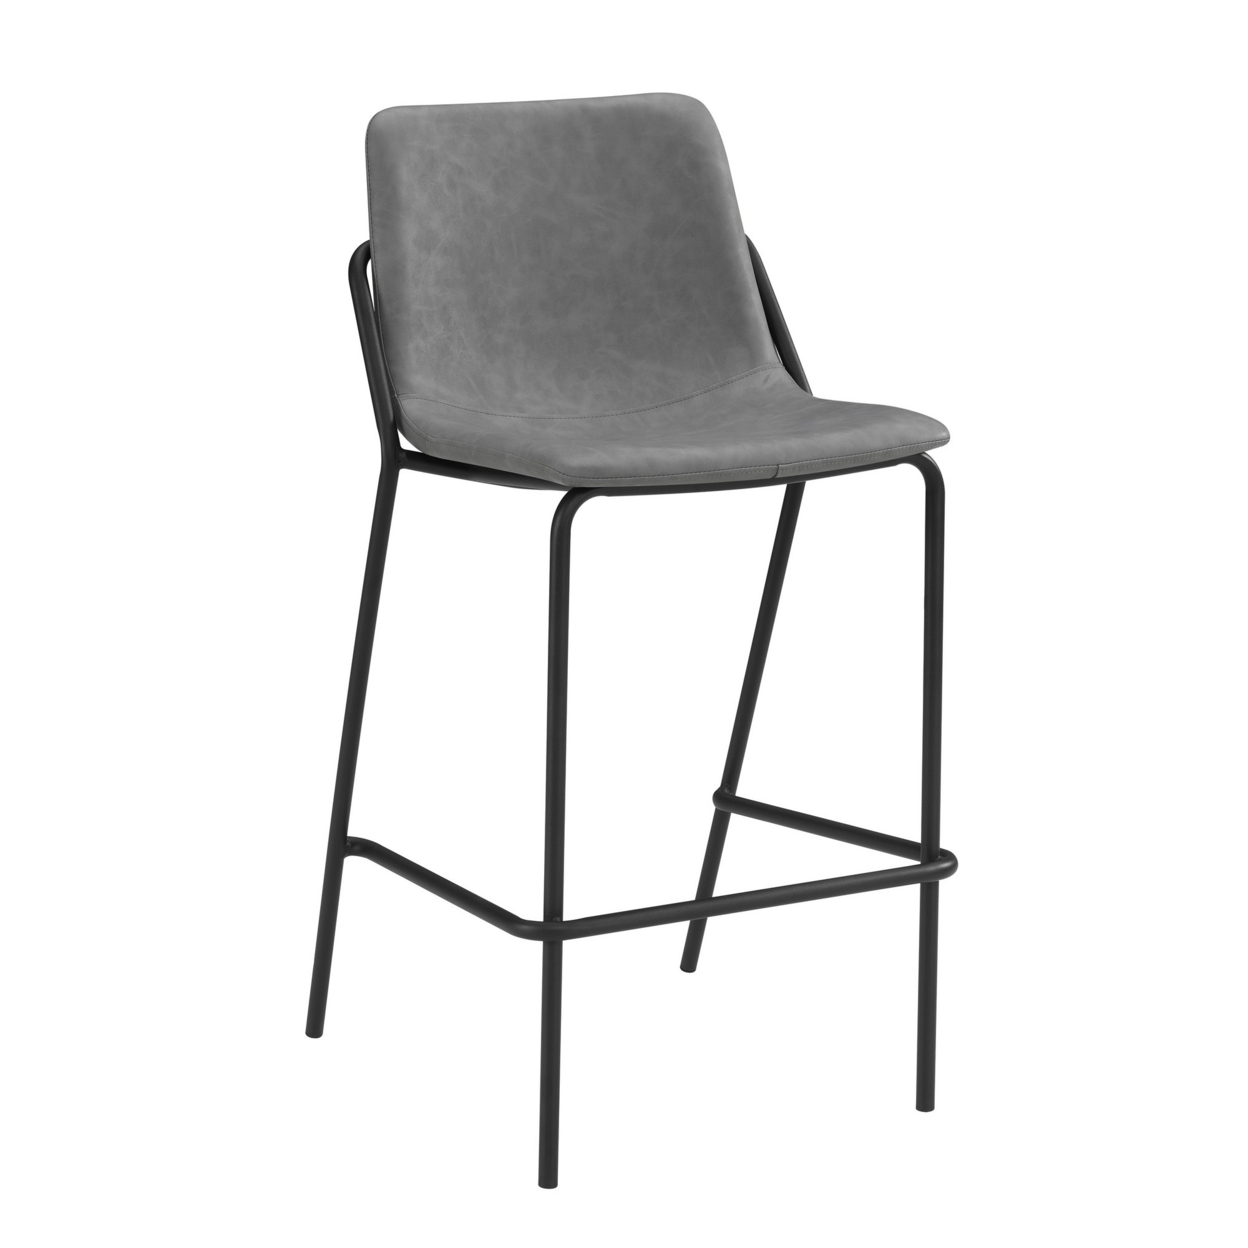 Barstool With Bucket Design And Tubular Frame, Set Of 2, Gray And Black- Saltoro Sherpi